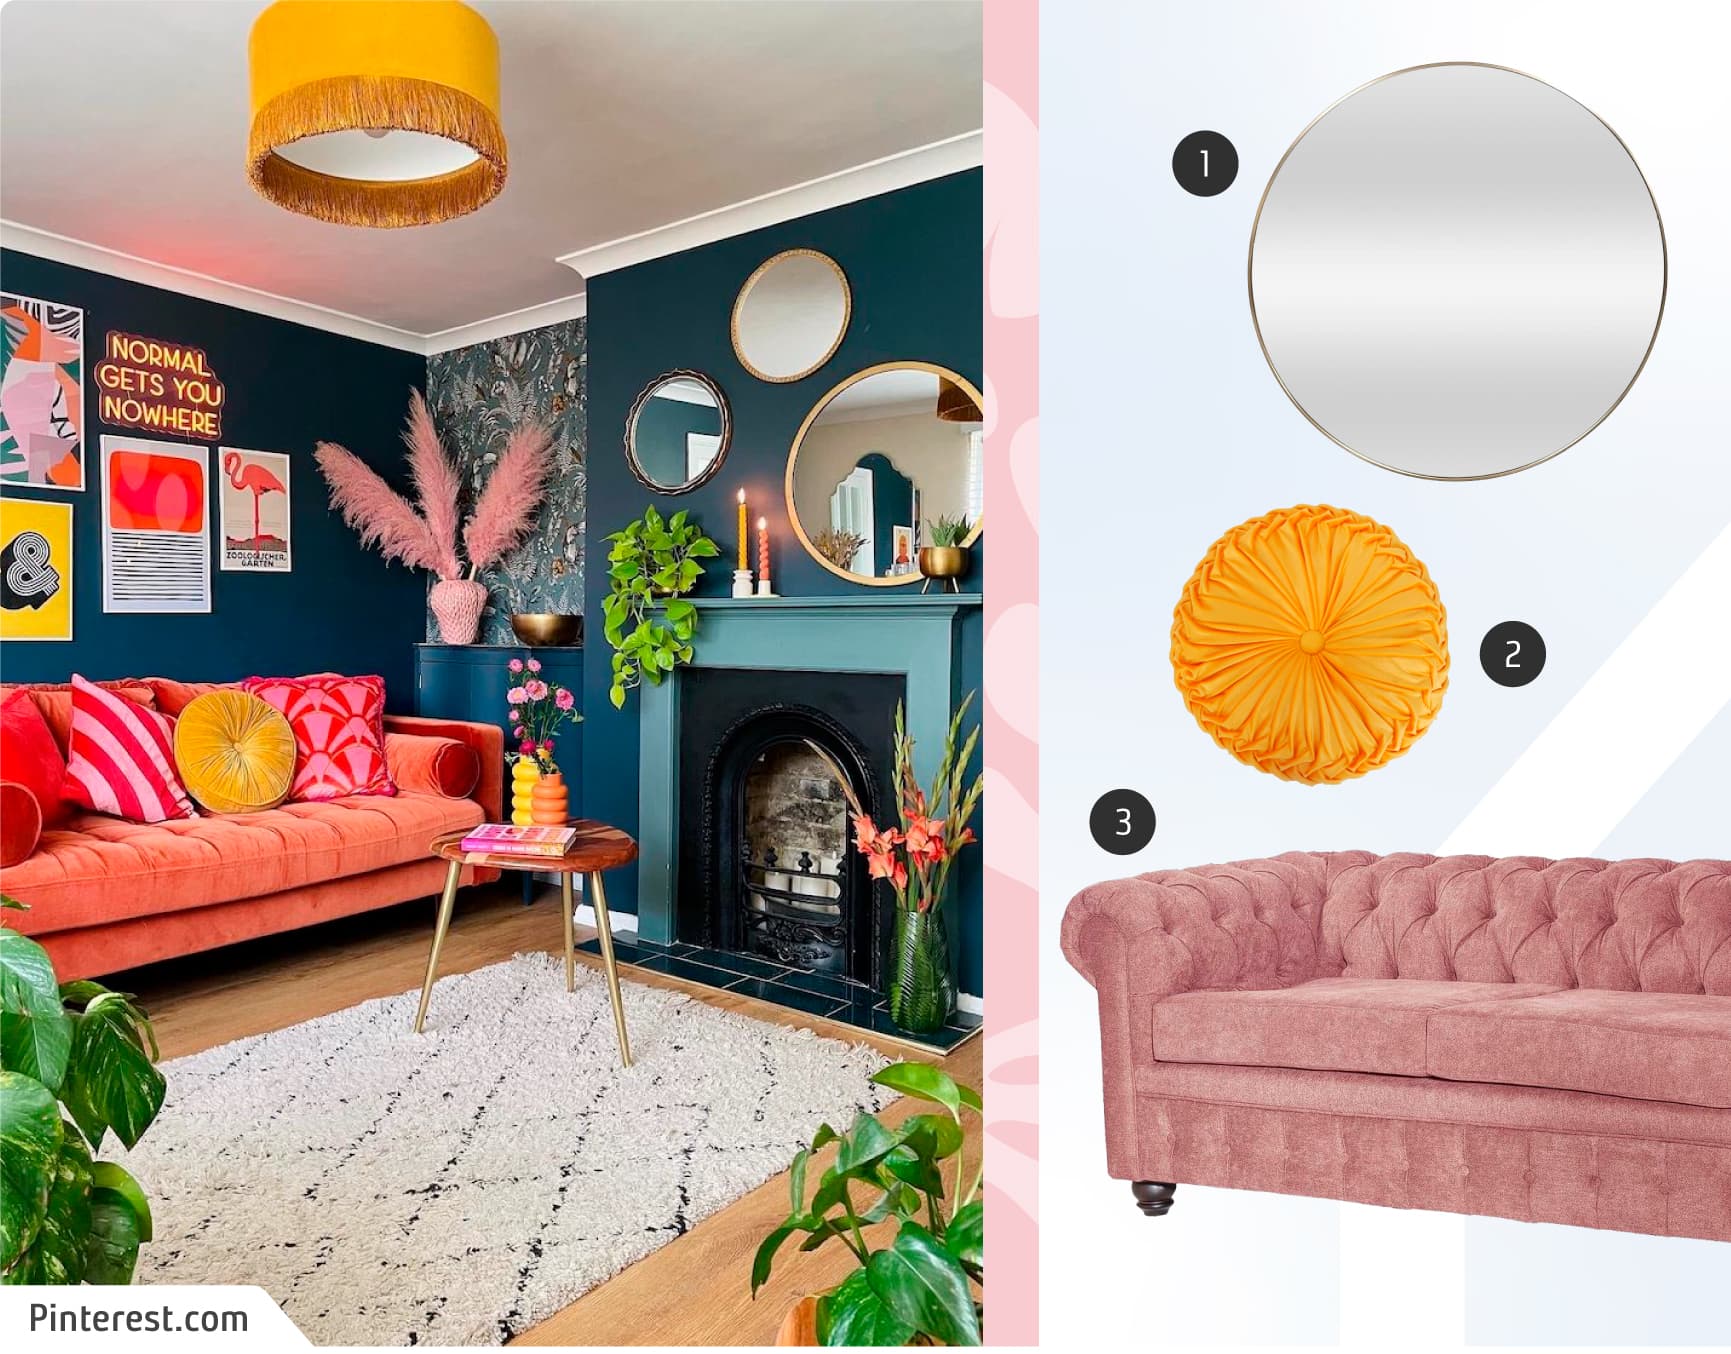 Moodboard de inspiración con una foto de una sala de estar maximalista, con muros verdes, cuadros de colores, espejos redondos; y junto a ella, un sofá rosado, cojín amarillo y un espejo redondo con marco dorado.